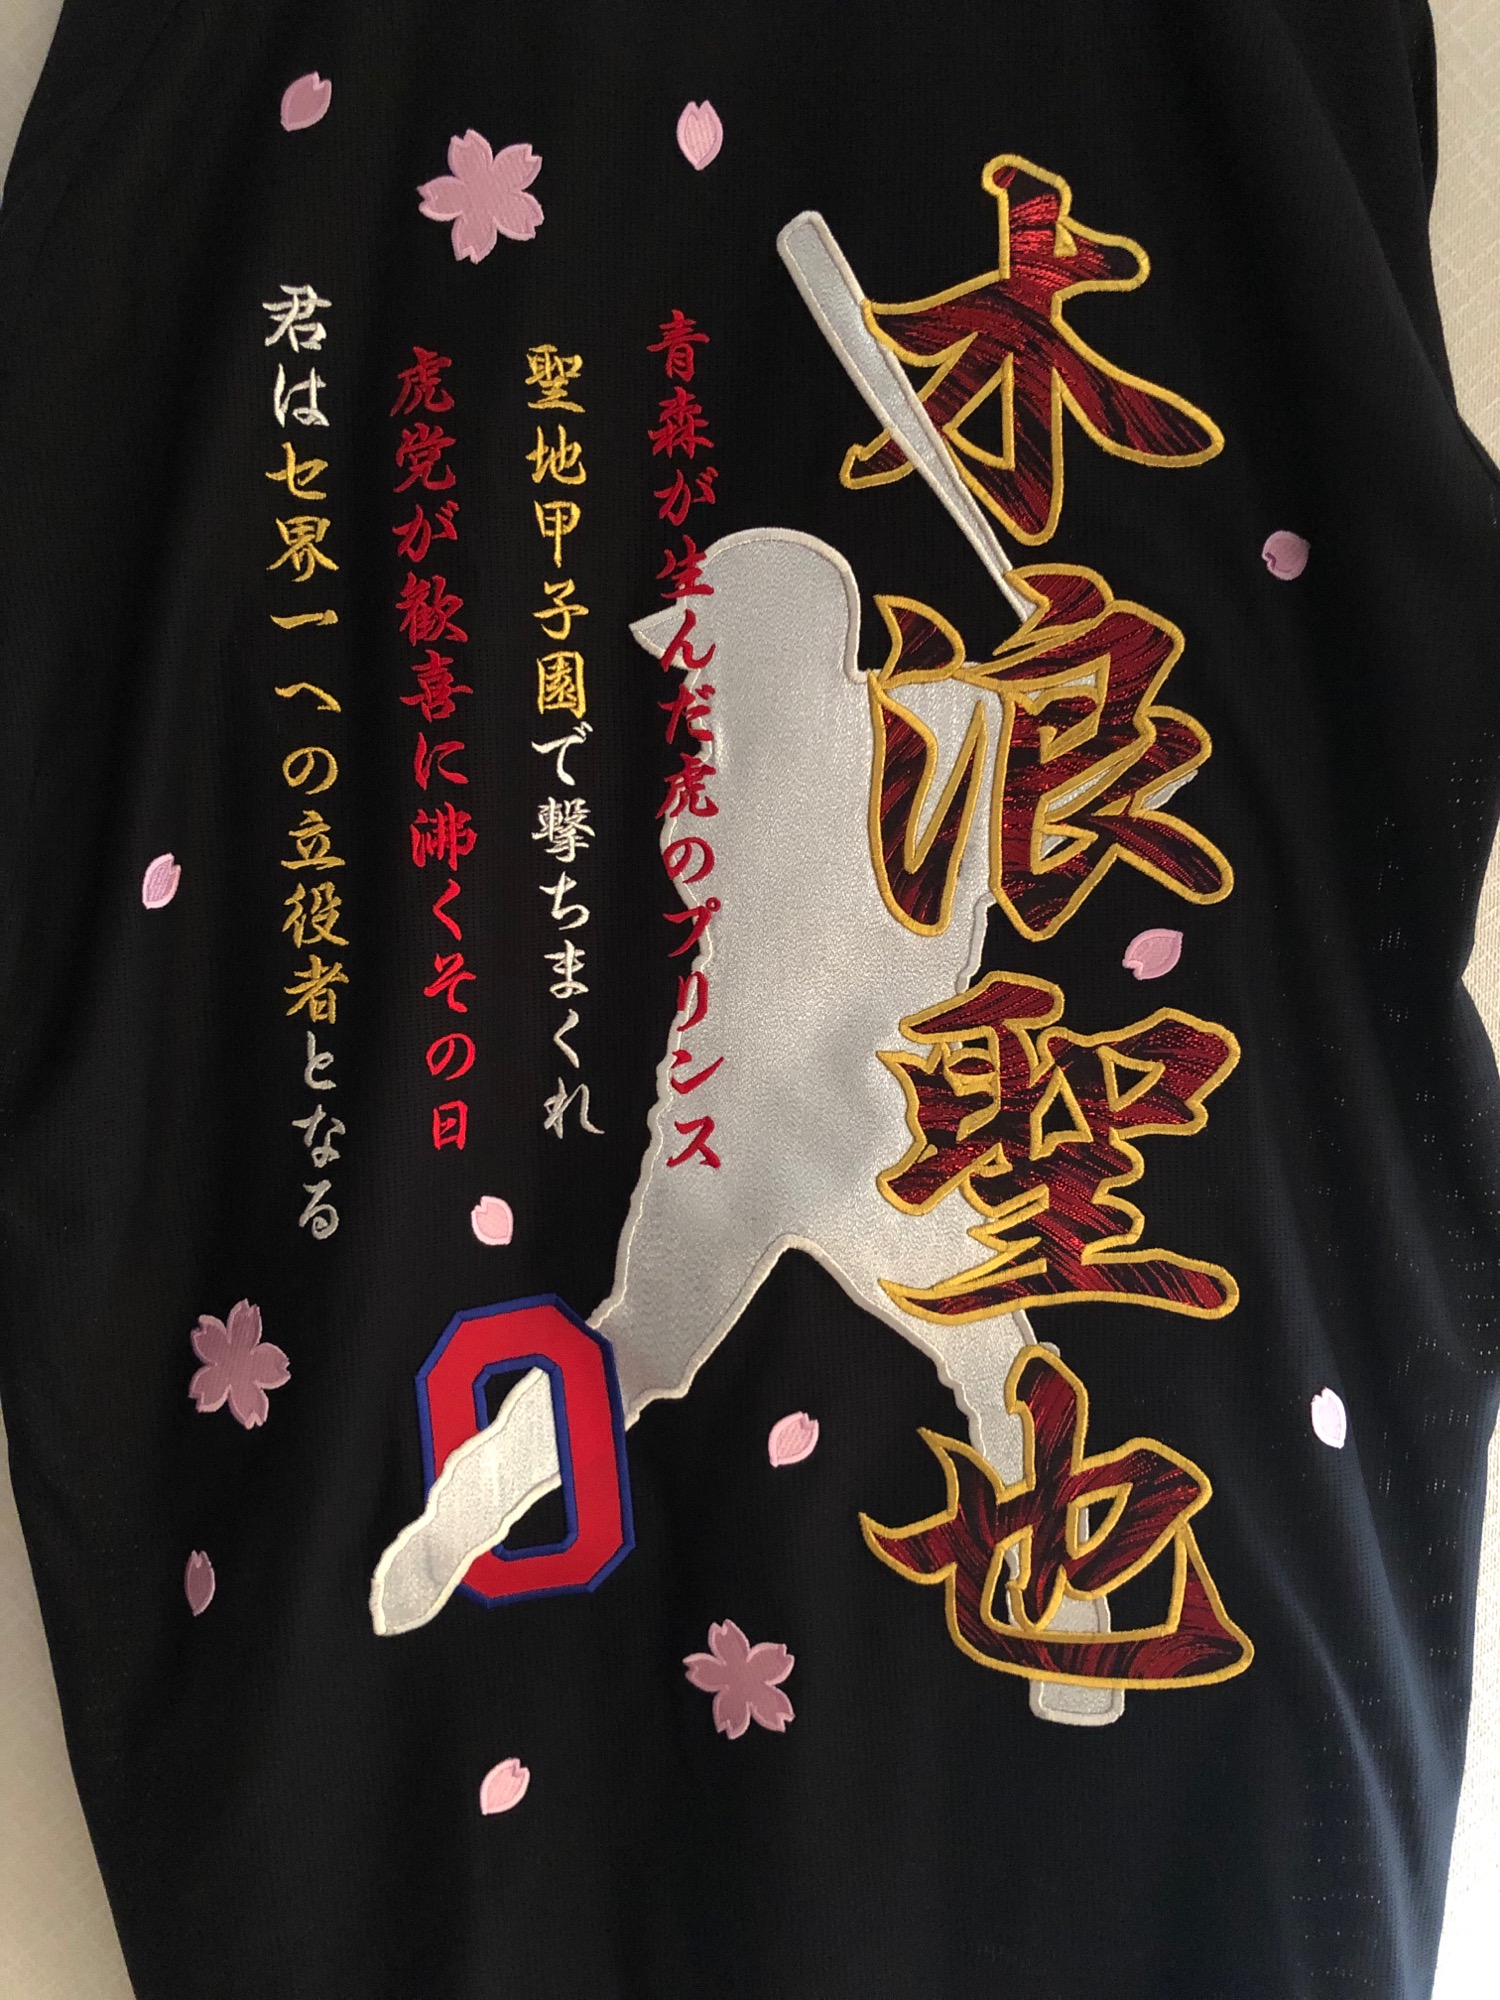 阪神タイガース、ビジターユニフォームへの木浪聖也選手の刺繍